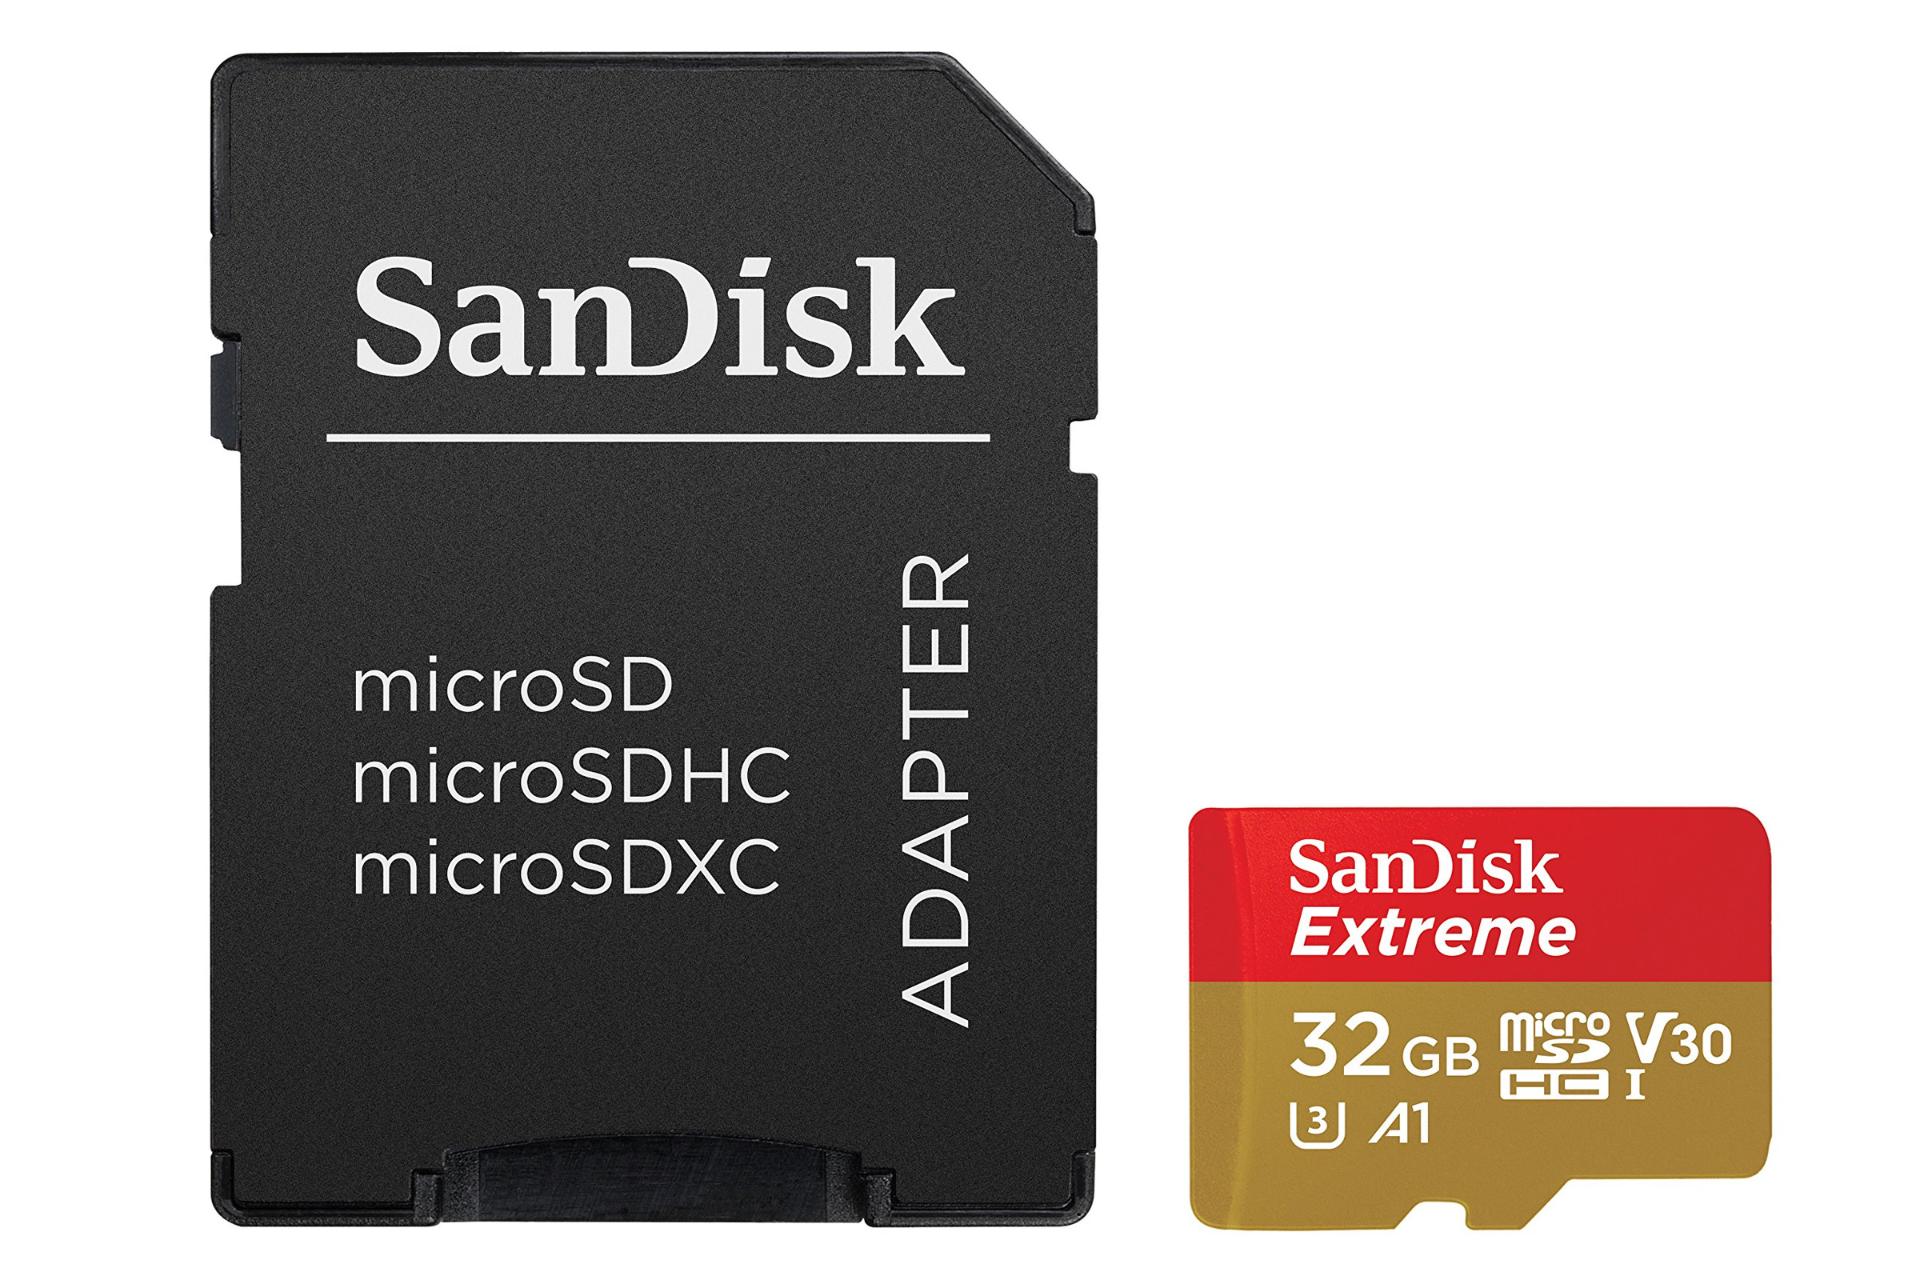 آداپتر سن دیسک microSDHC با ظرفیت 32 گیگابایت مدل Extreme A1 کلاس 10